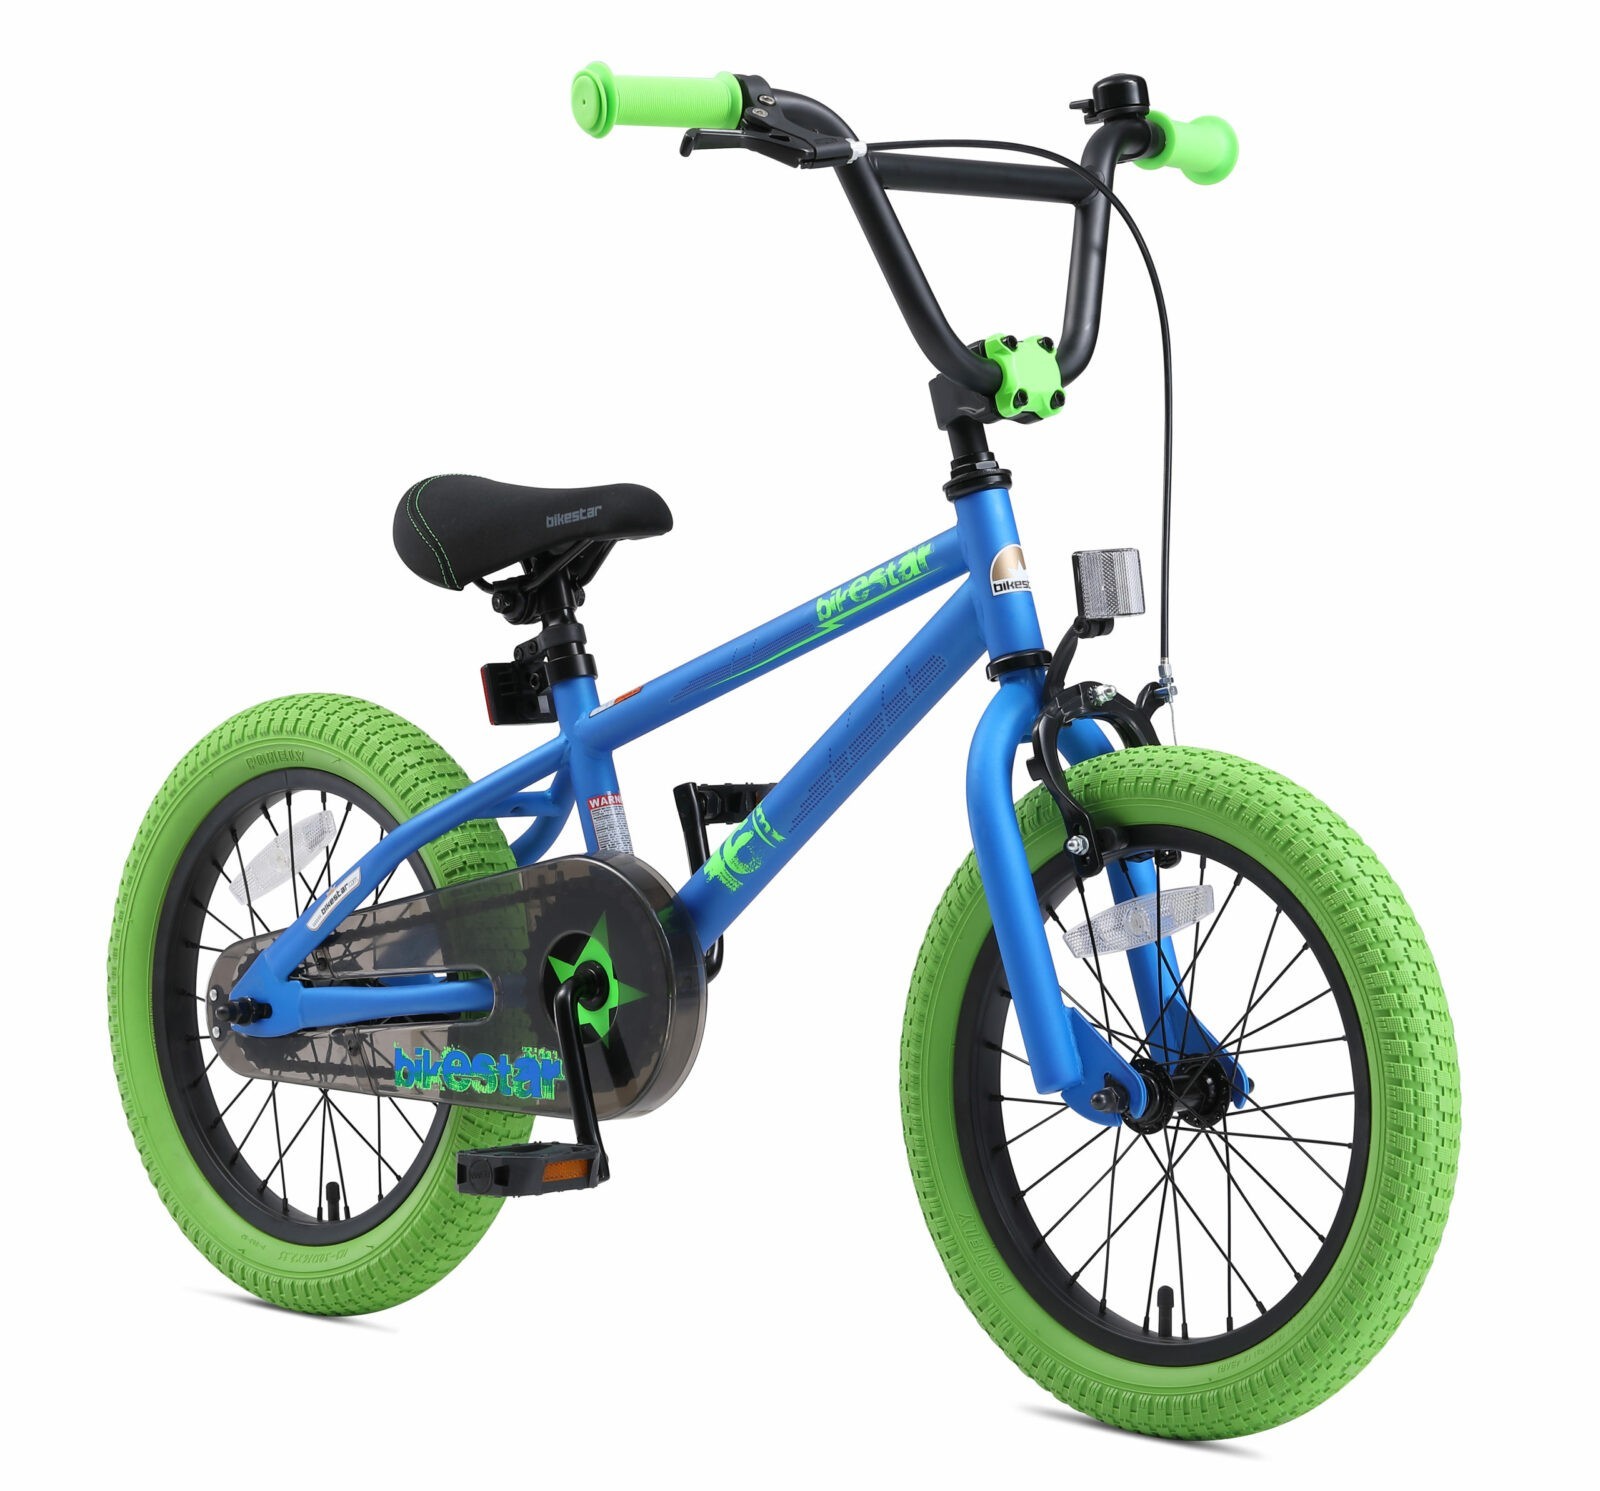 Correctie mouw reflecteren Bikestar 16 inch BMX kinderfiets, blauw / groen - Fietsdirect